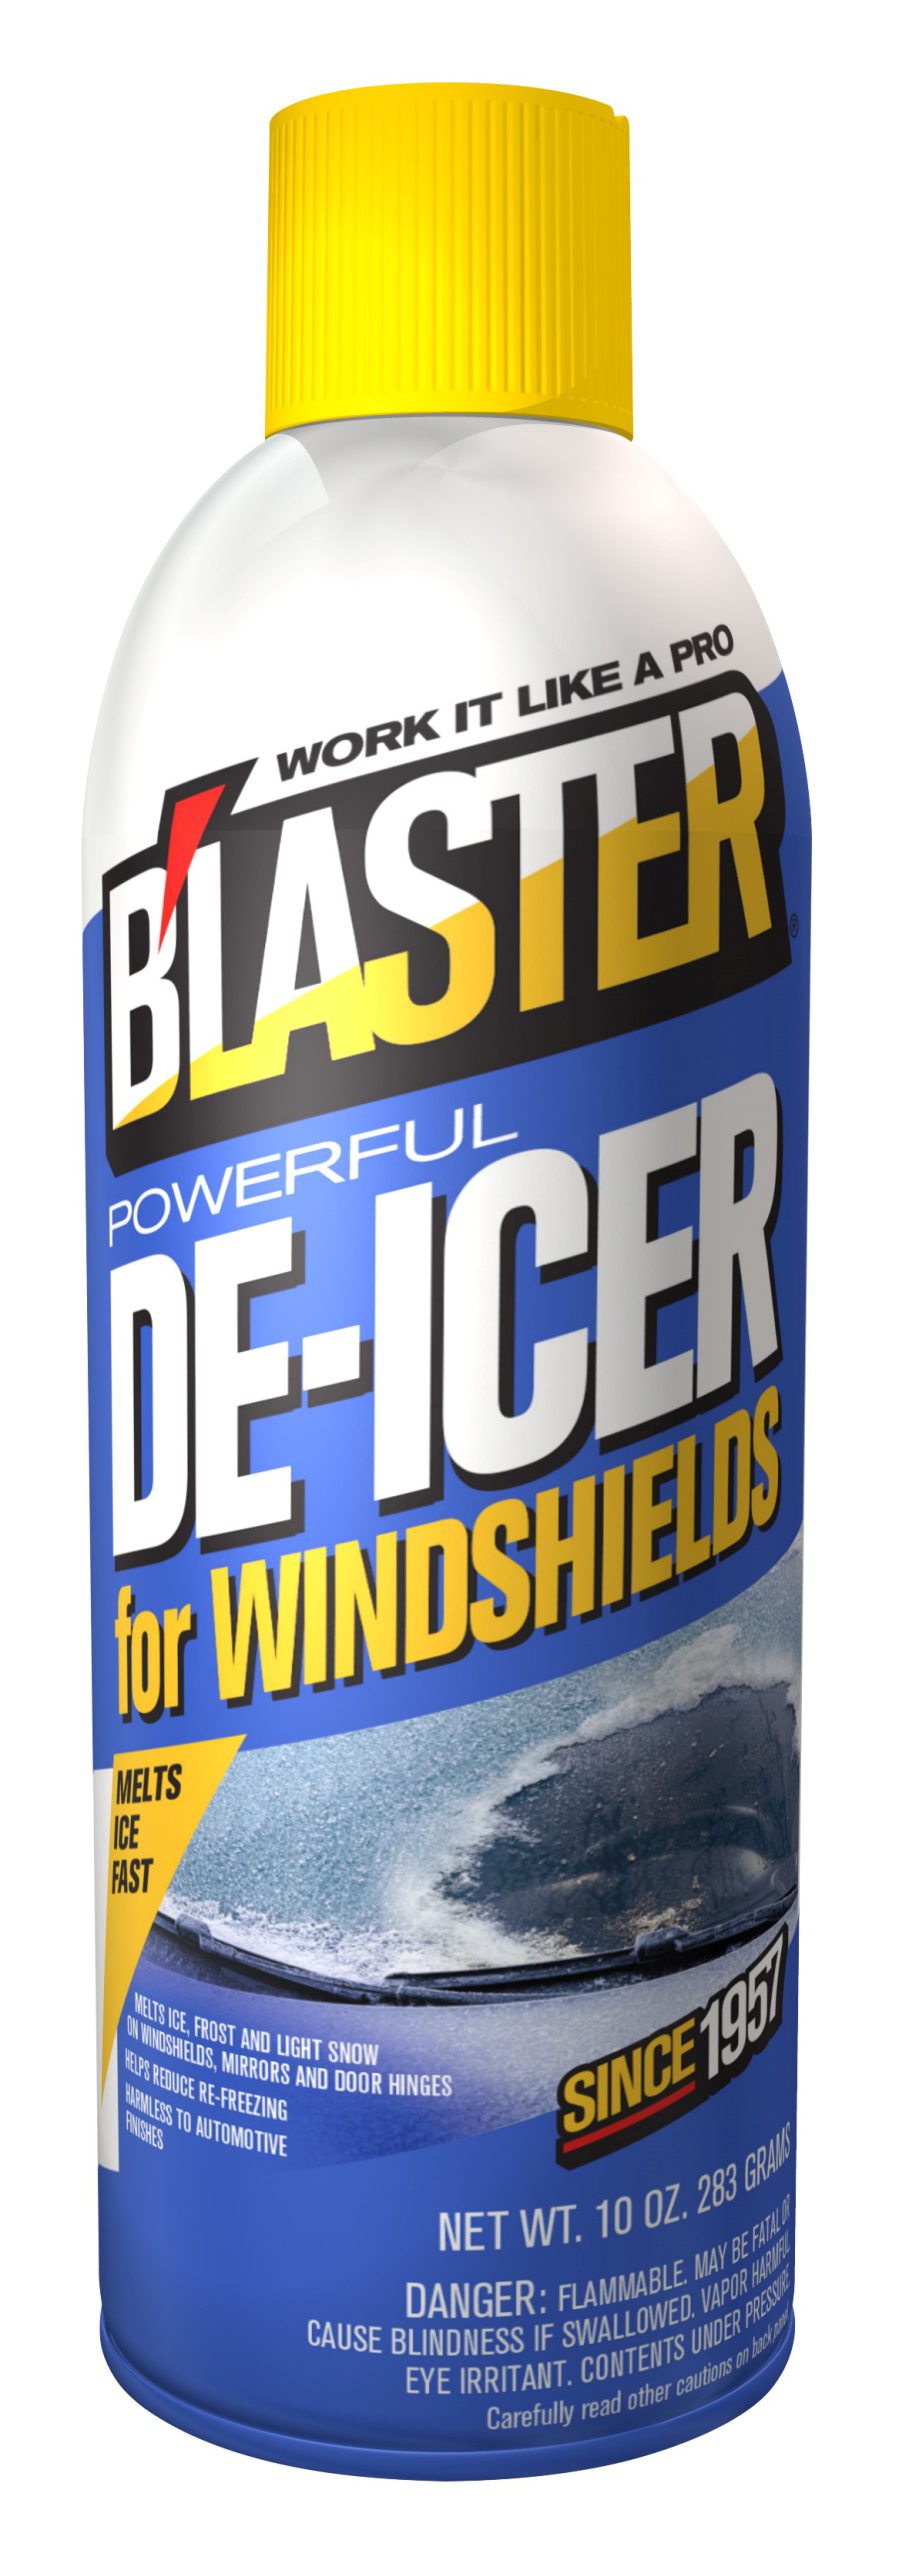 Reviews for Blaster 10 oz. DeIcer Windshield Spray